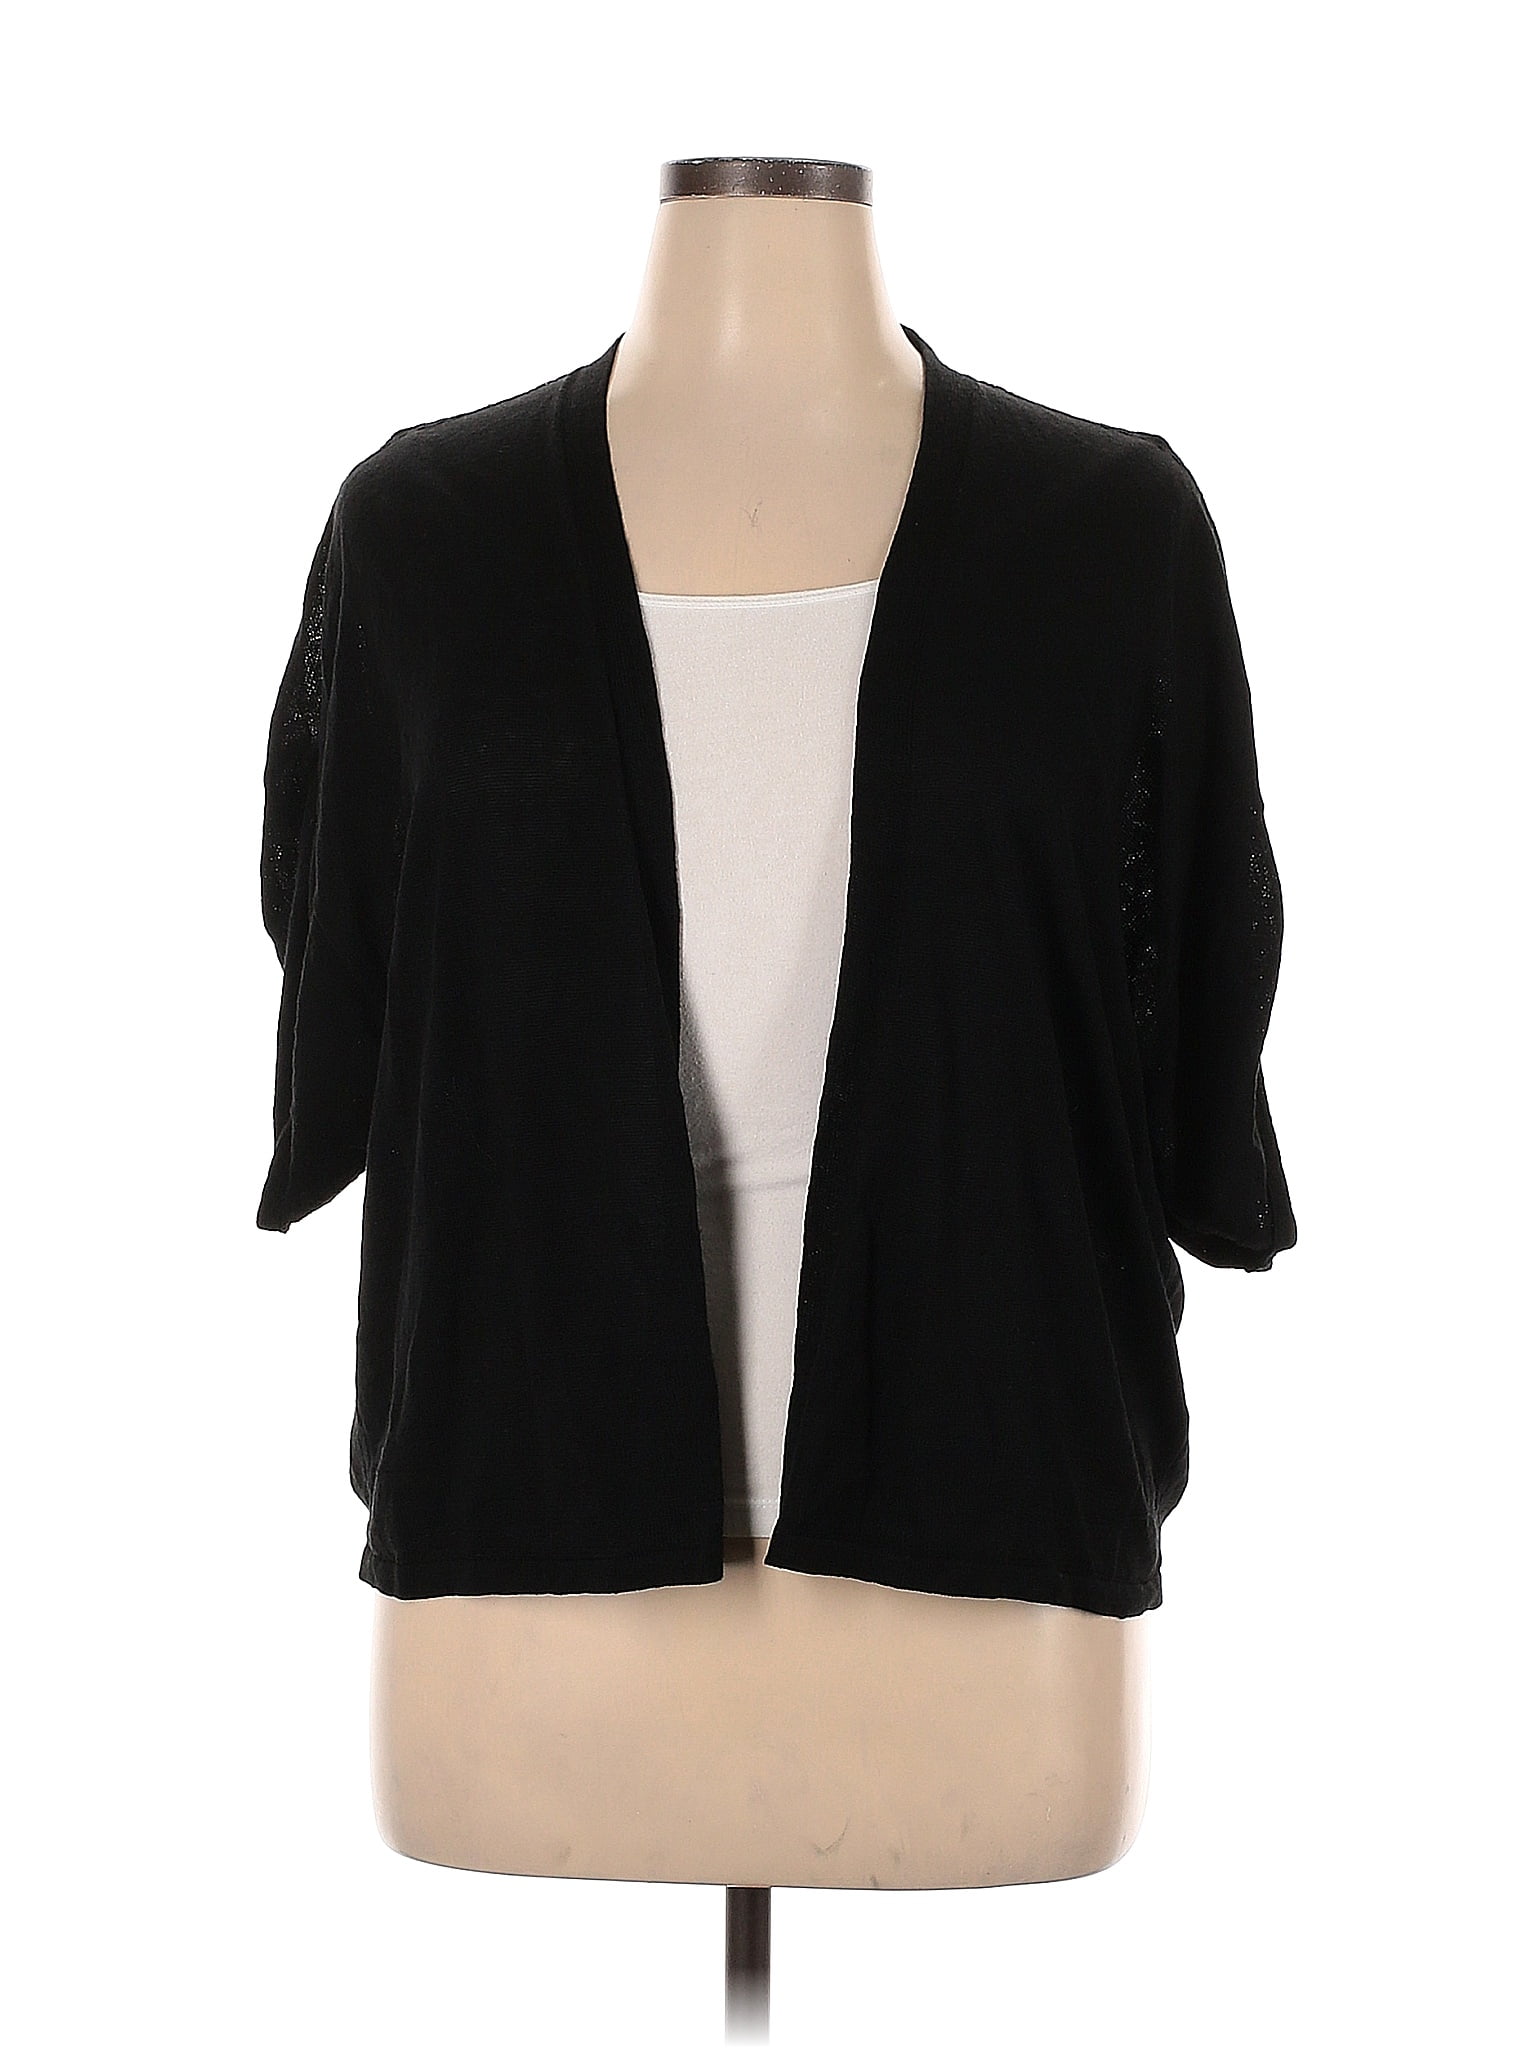 J.Jill Color Block Solid Black Cardigan Size XL - 62% off | ThredUp